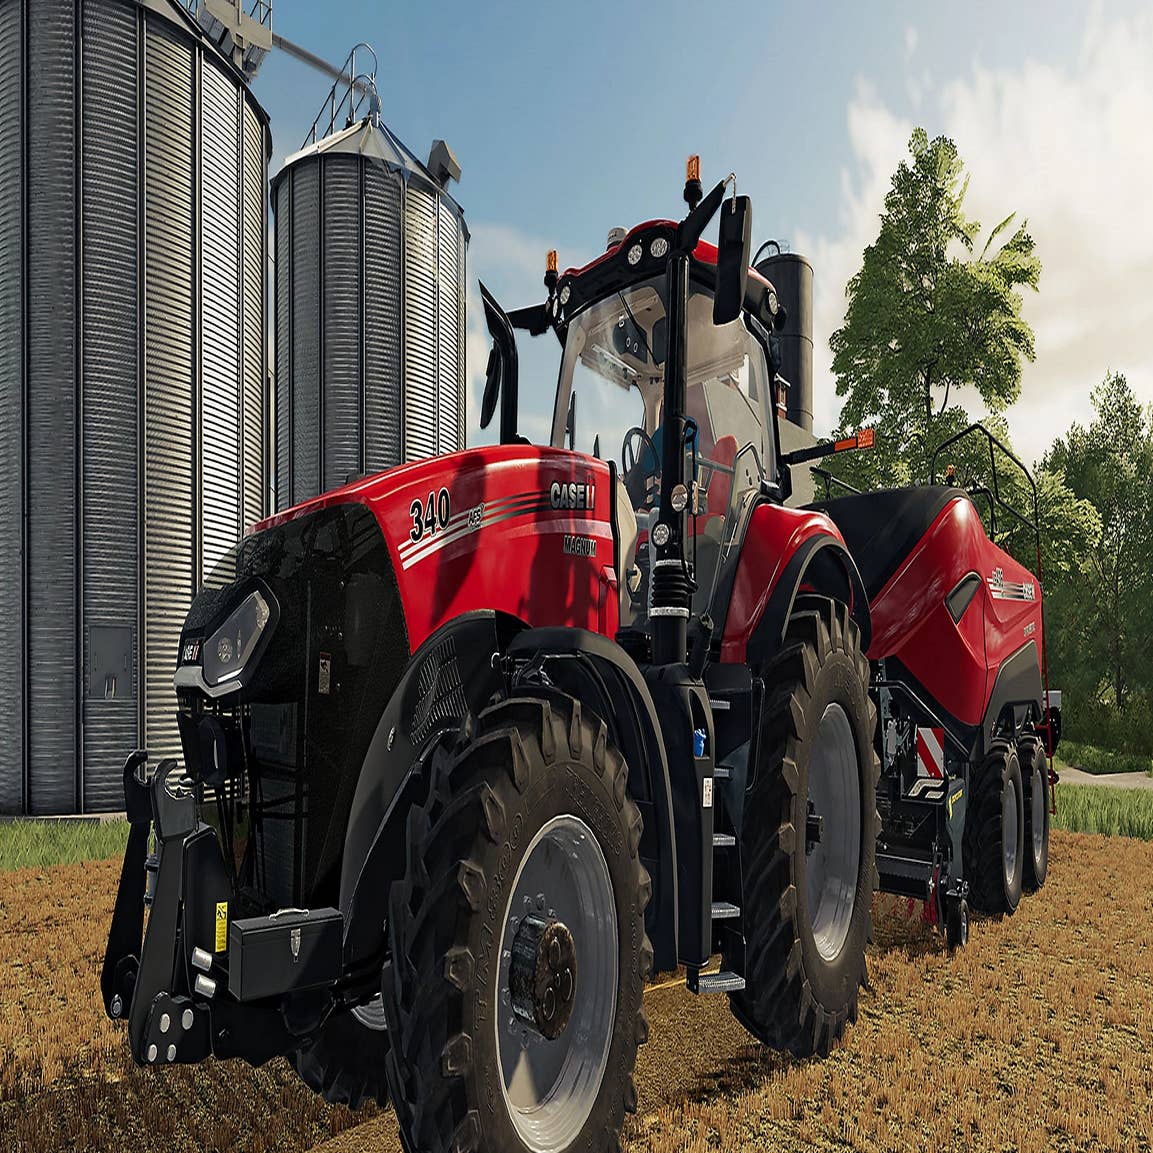 Landwirtschafts-Simulator 22: Alle Neuerungen im Überblick